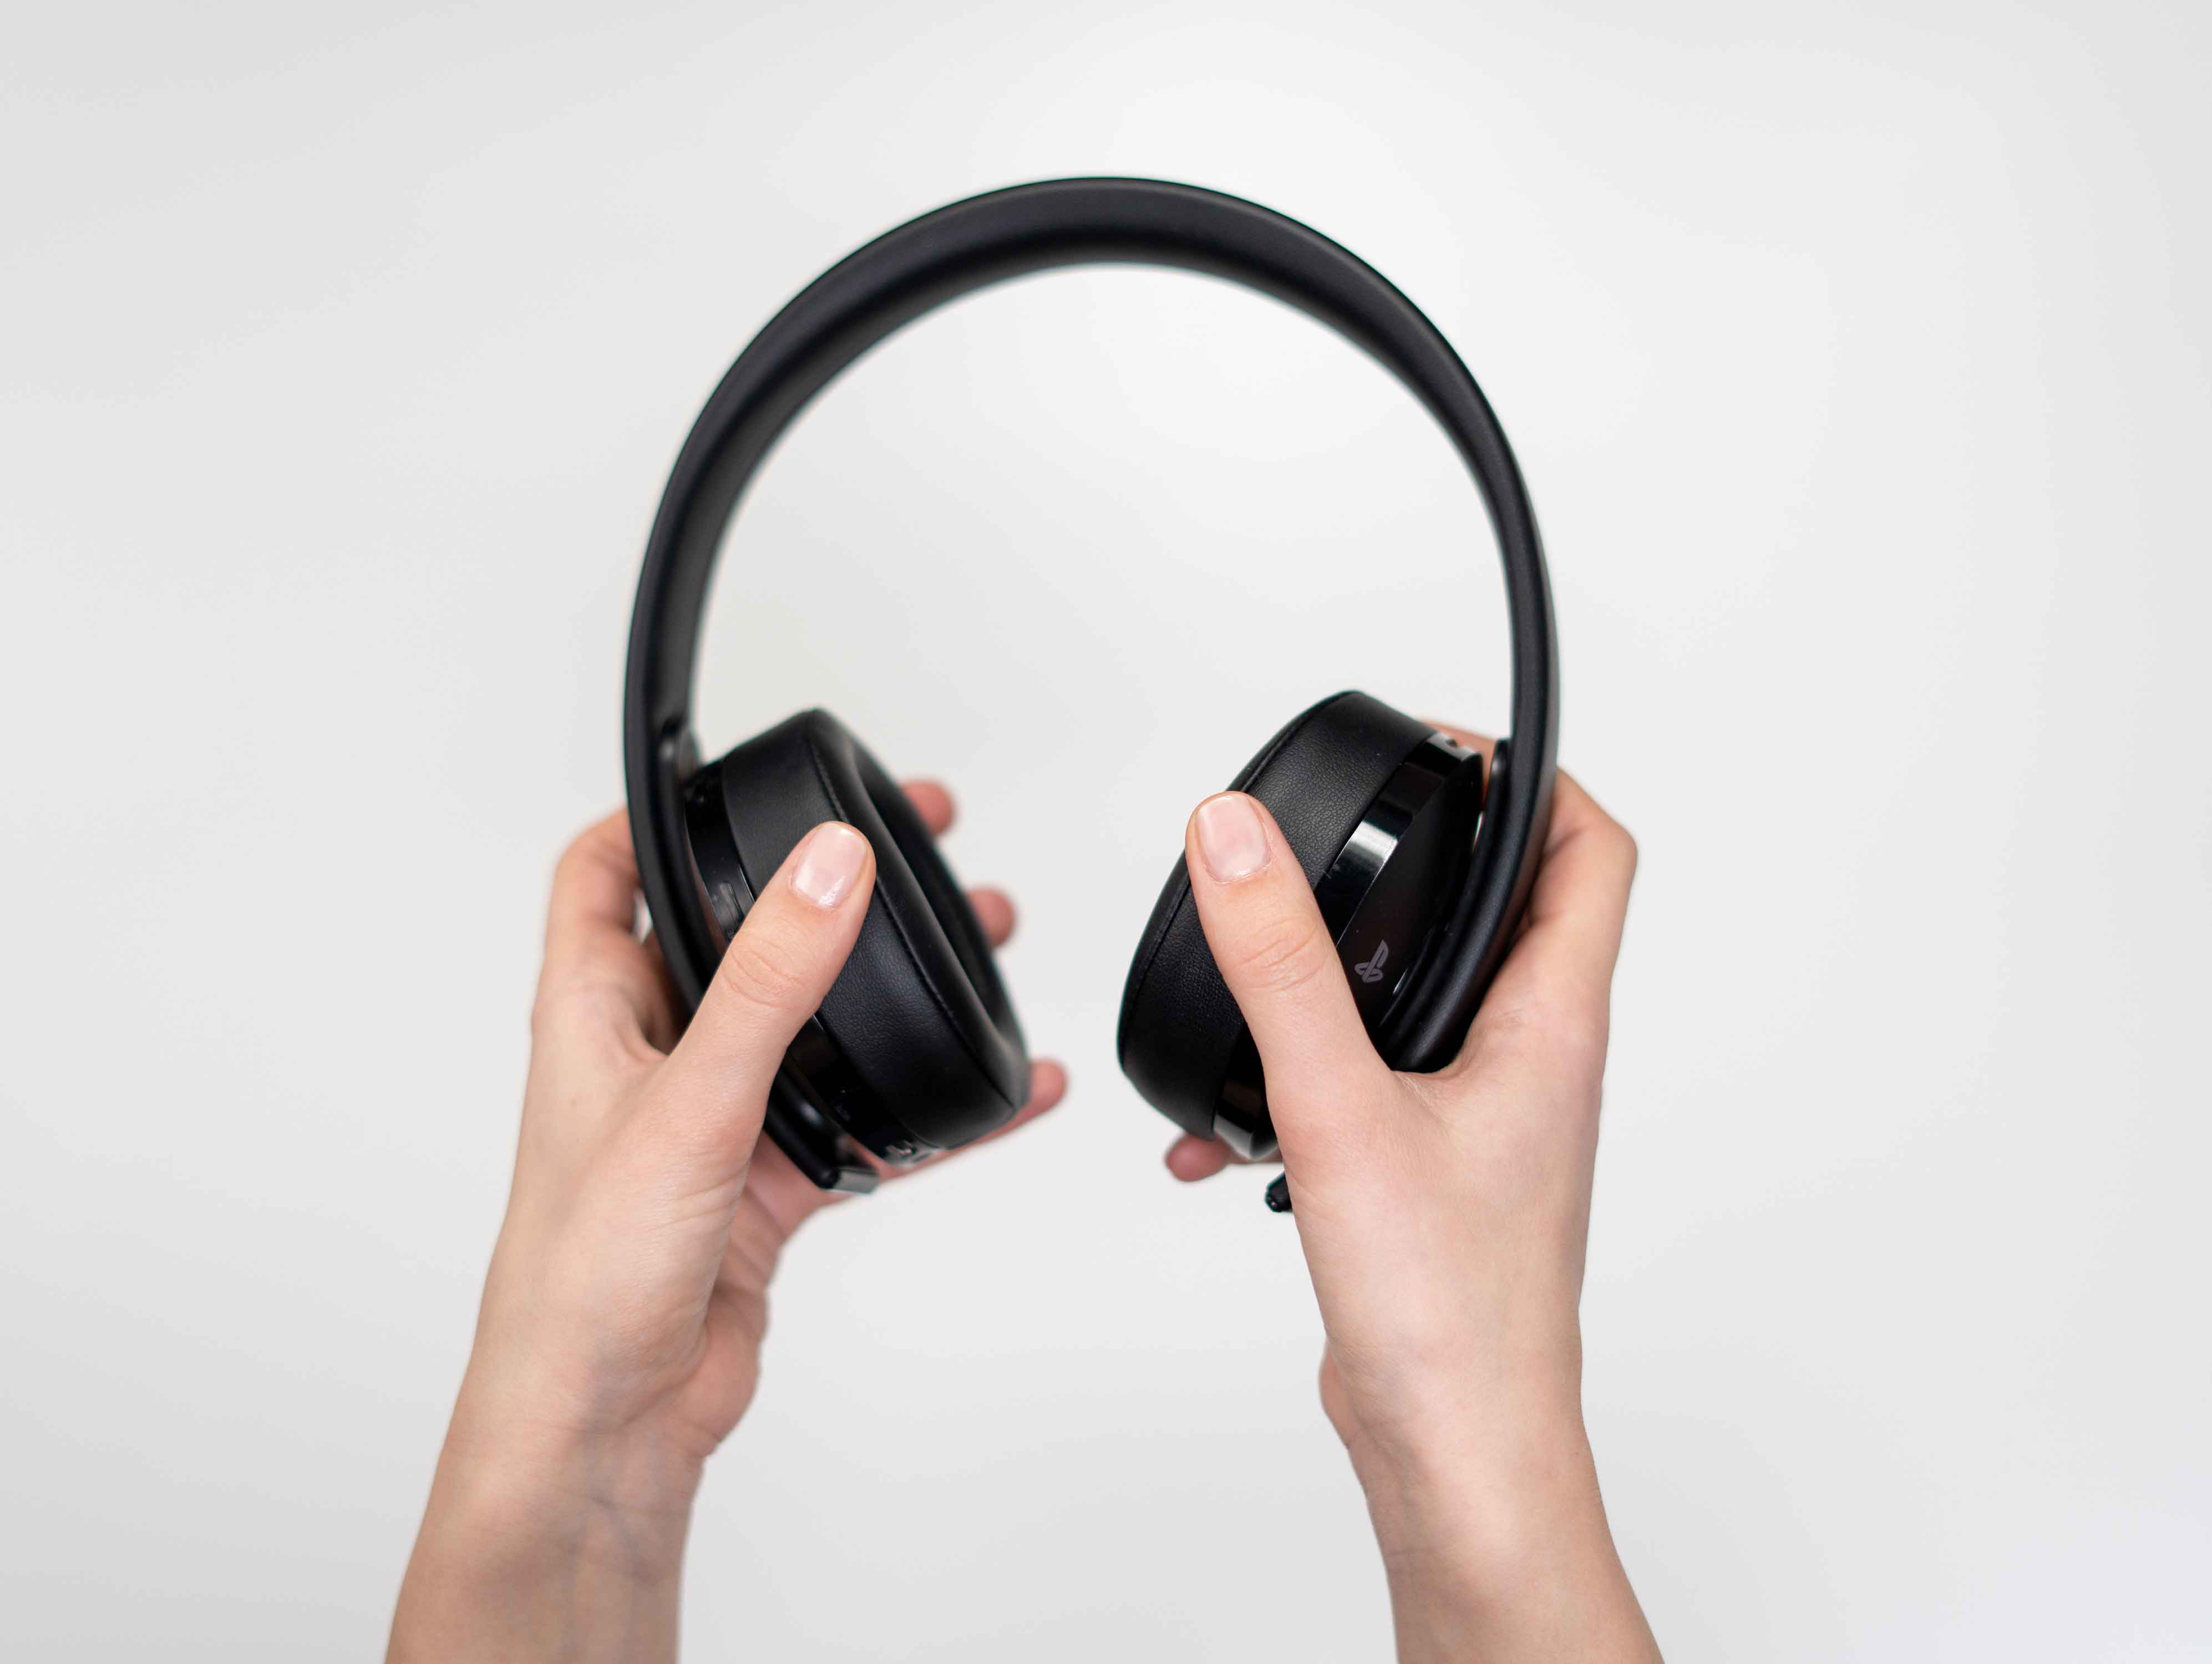 Headphones podem danificar a audição